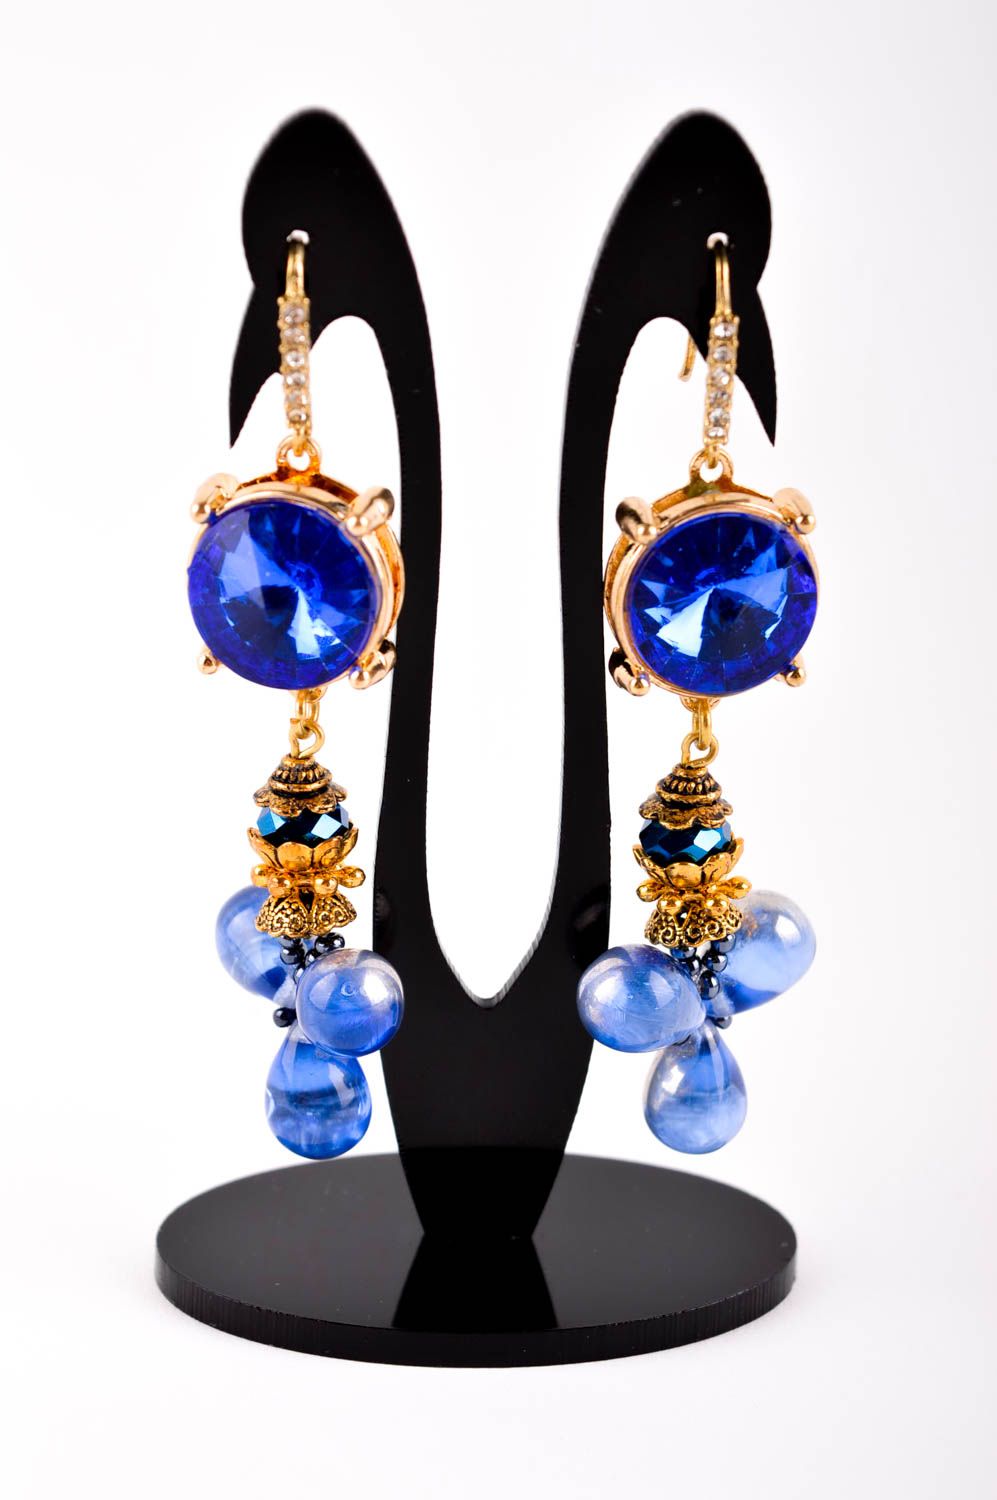 Handmade earrings designer earrings unusual accessory for women stone earrings photo 2